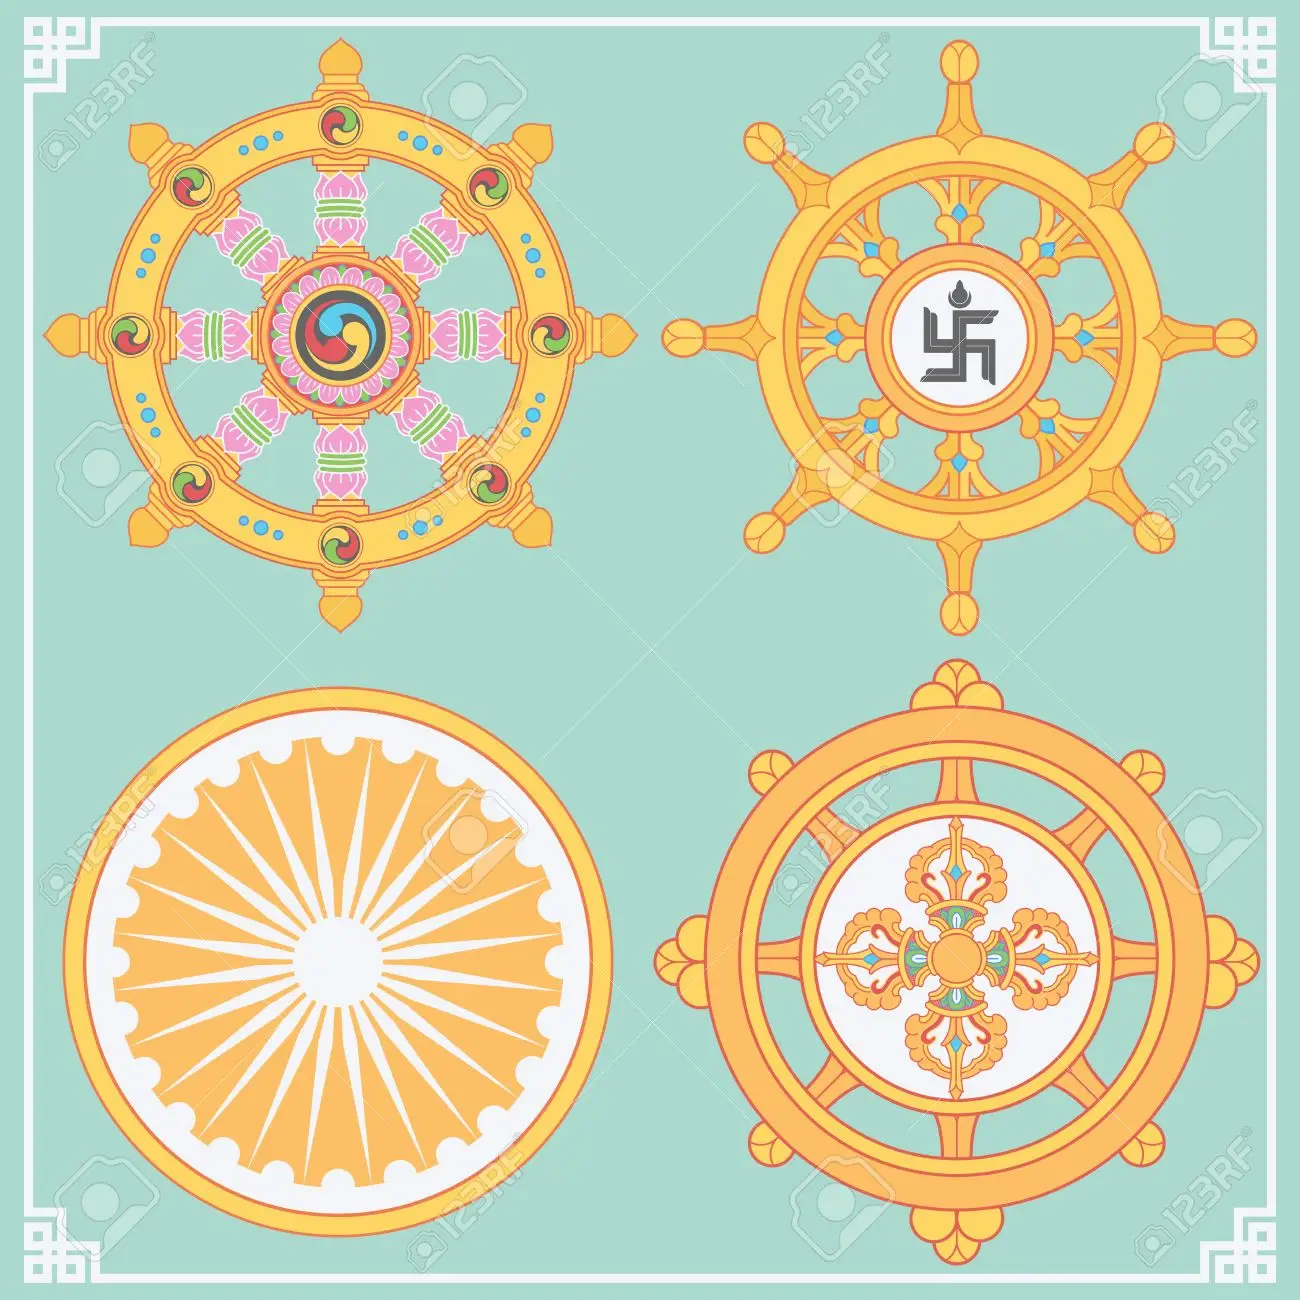 Símbolos espirituales en el Budismo: Rueda de Dharma y otros símbolos de iluminación.